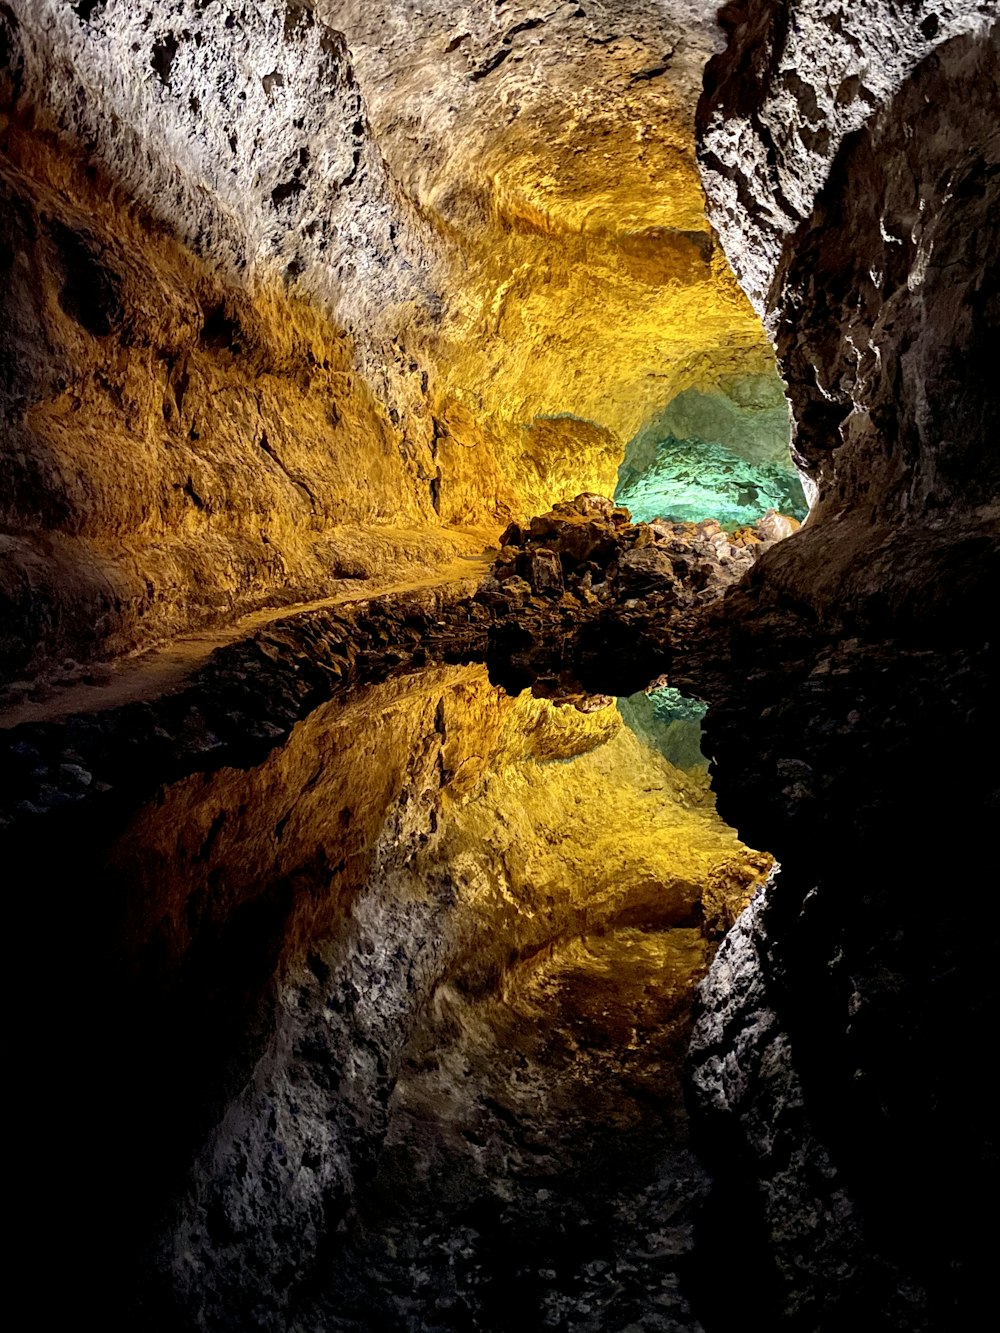 grotte brune et jaune avec de l’eau